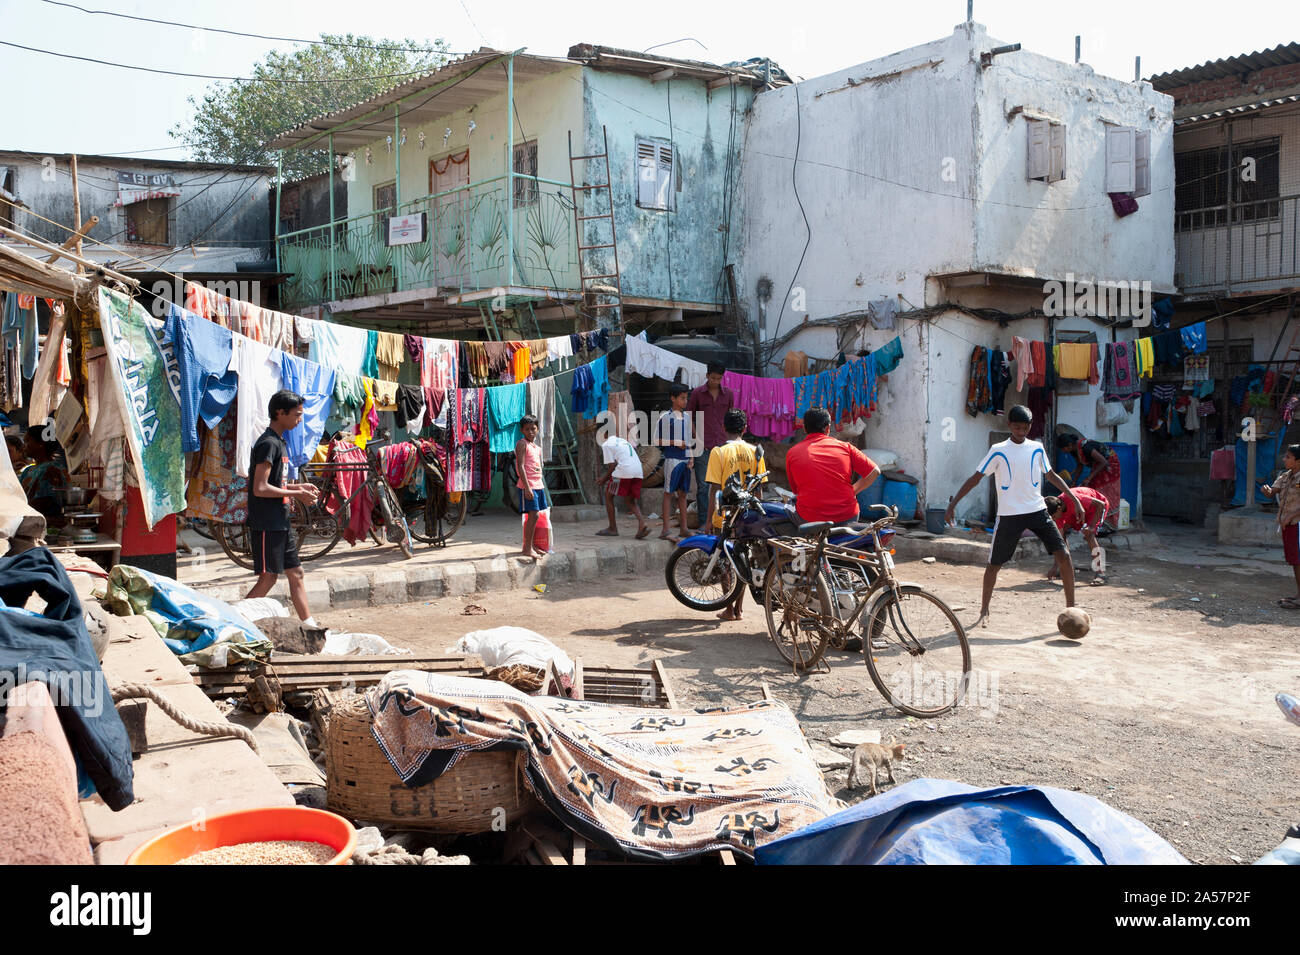 View of slum area, Cuffe Parade, Mumbai, Maharashtra, India Stock Photo